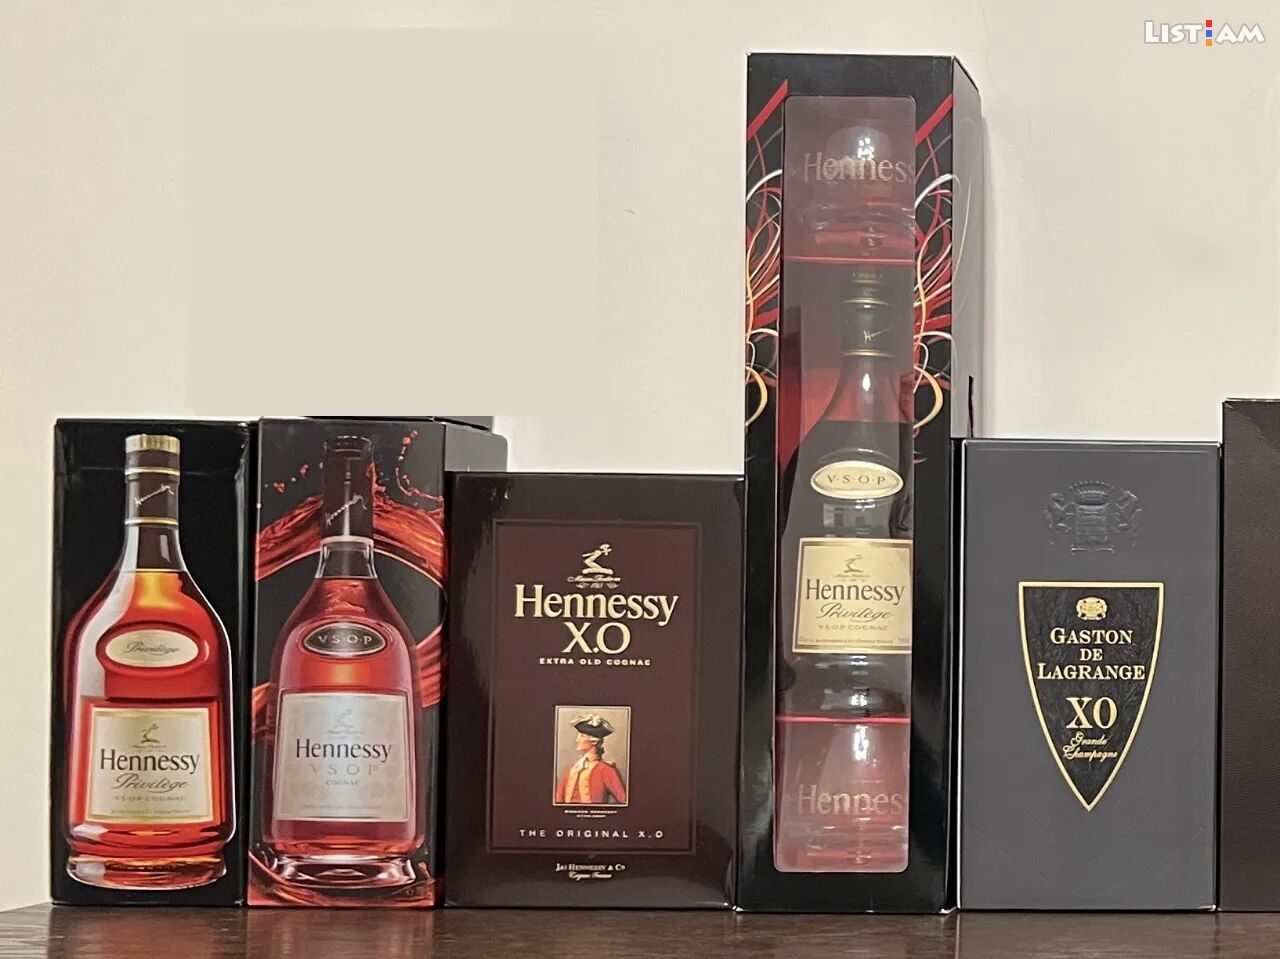 Hennesy Original